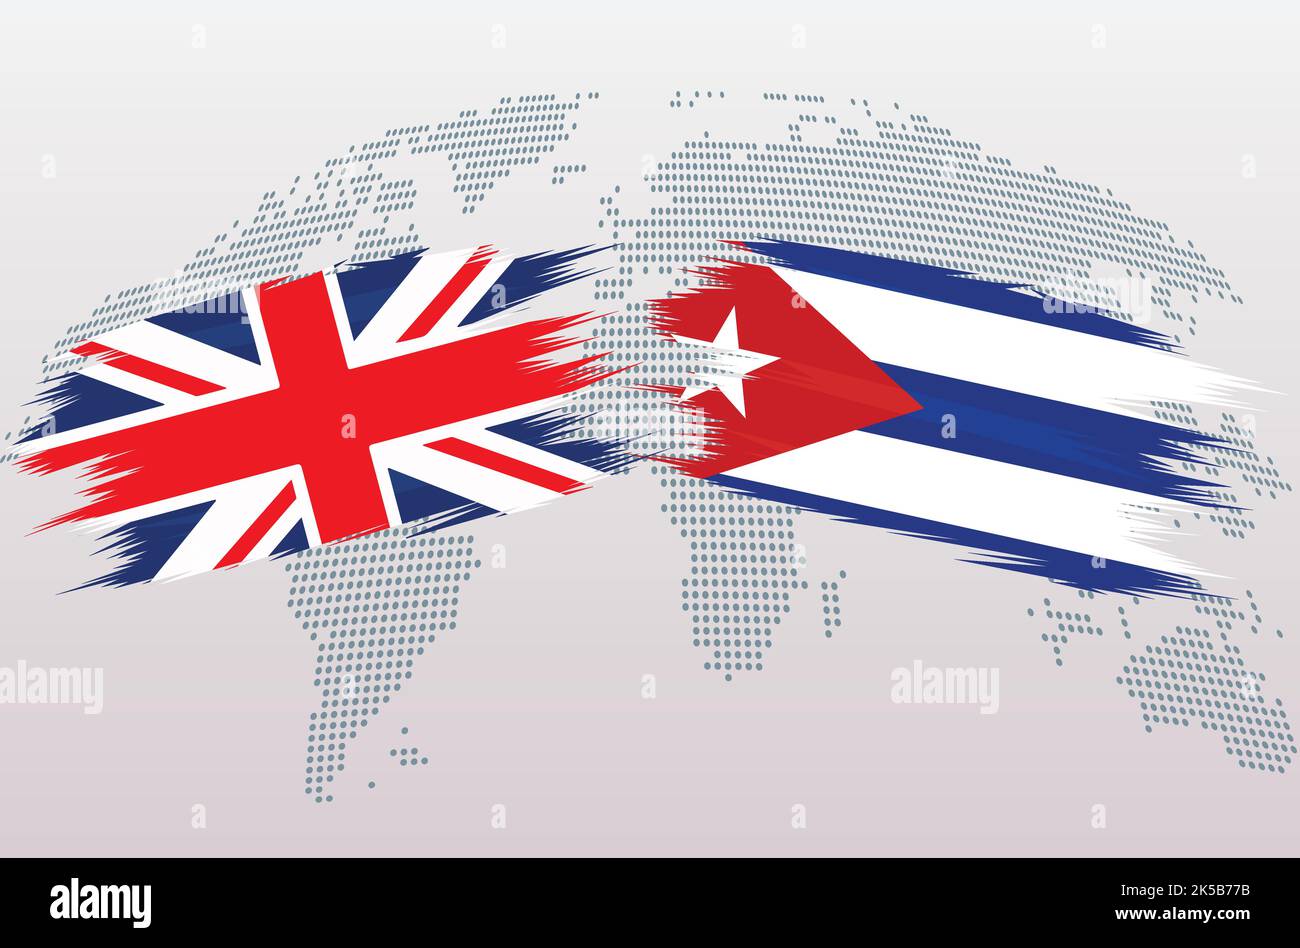 Drapeau britannique de la Grande-Bretagne et de Cuba. Le Royaume-Uni contre Cuba drapeaux, isolés sur fond gris de carte du monde. Illustration vectorielle. Illustration de Vecteur